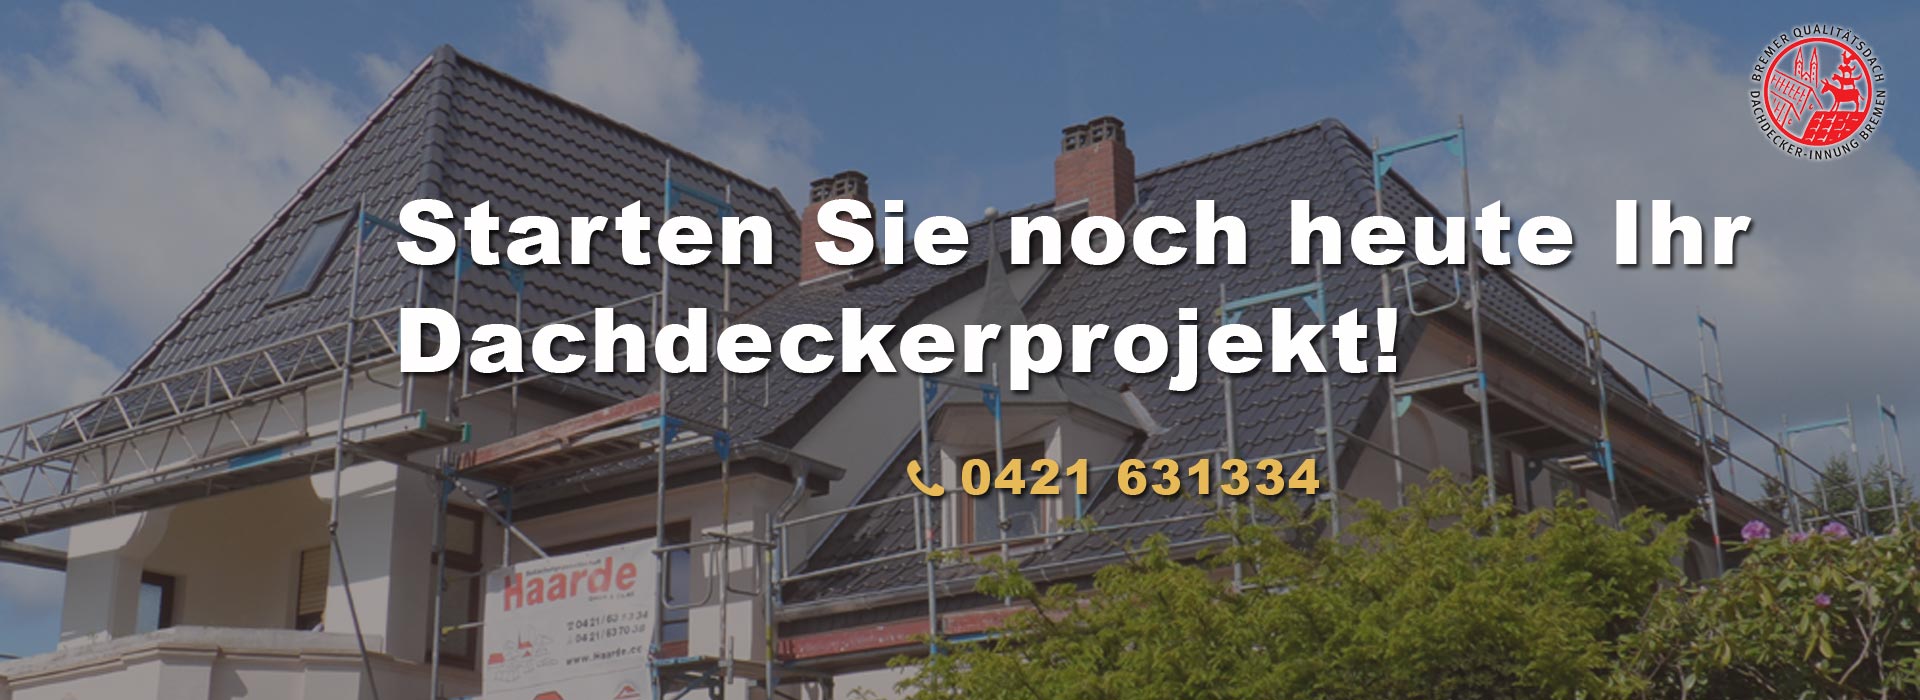 Dächer von Bedachungsgesellschaft Haarde GmbH & Co. KG